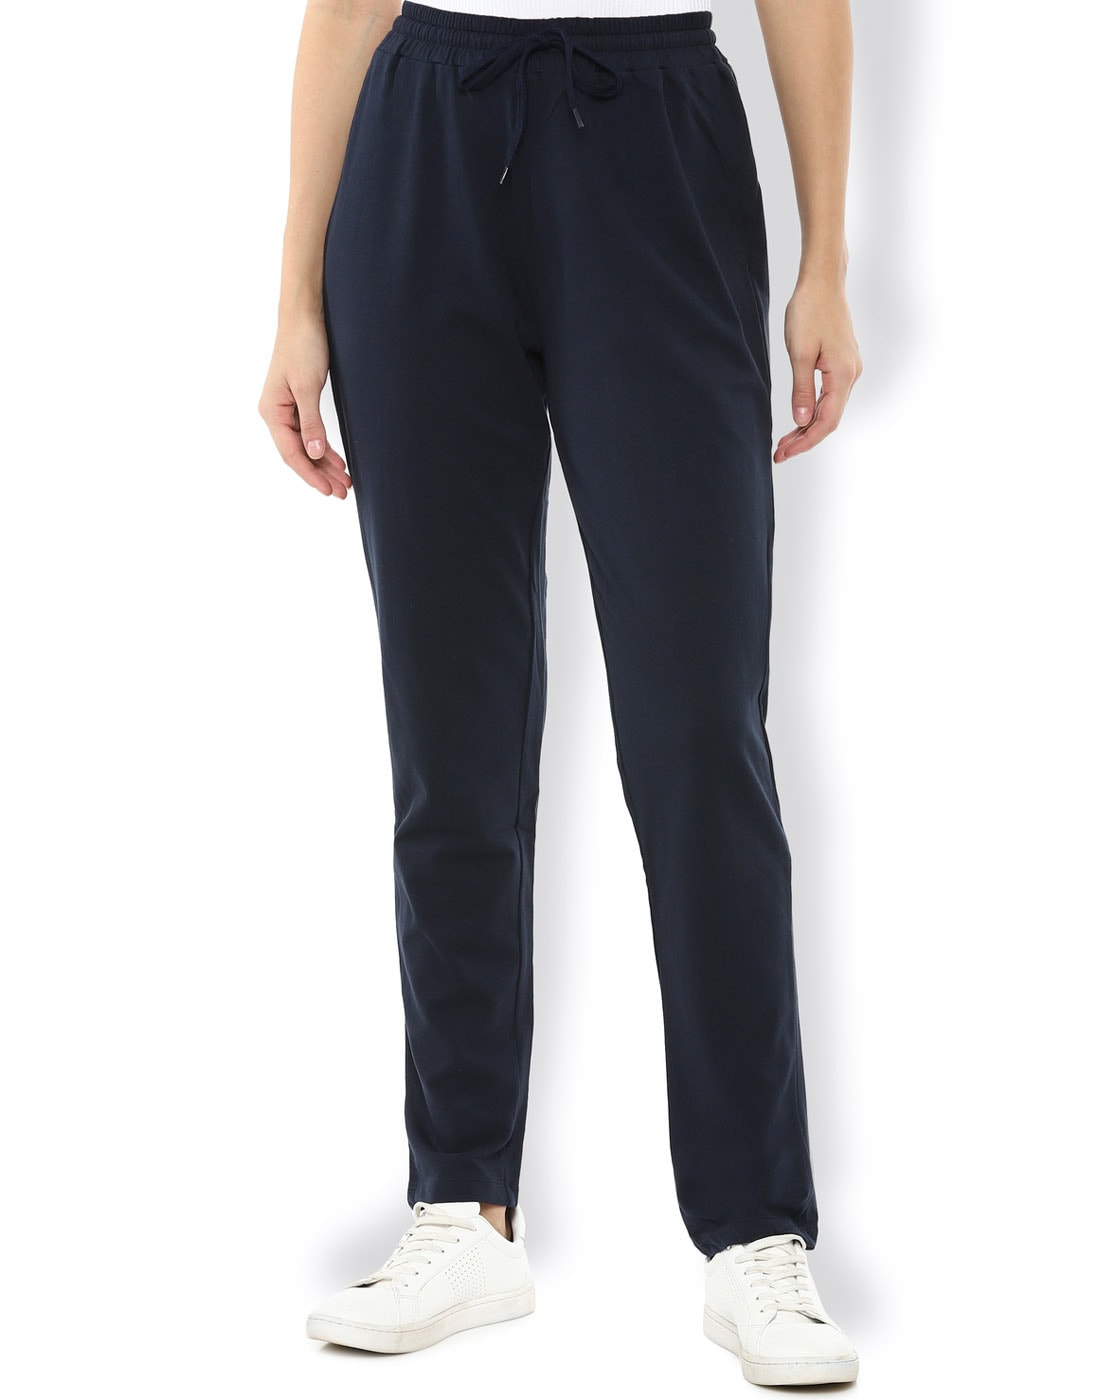 Buy Navy Blue Track Pants for Women by VAN HEUSEN Online